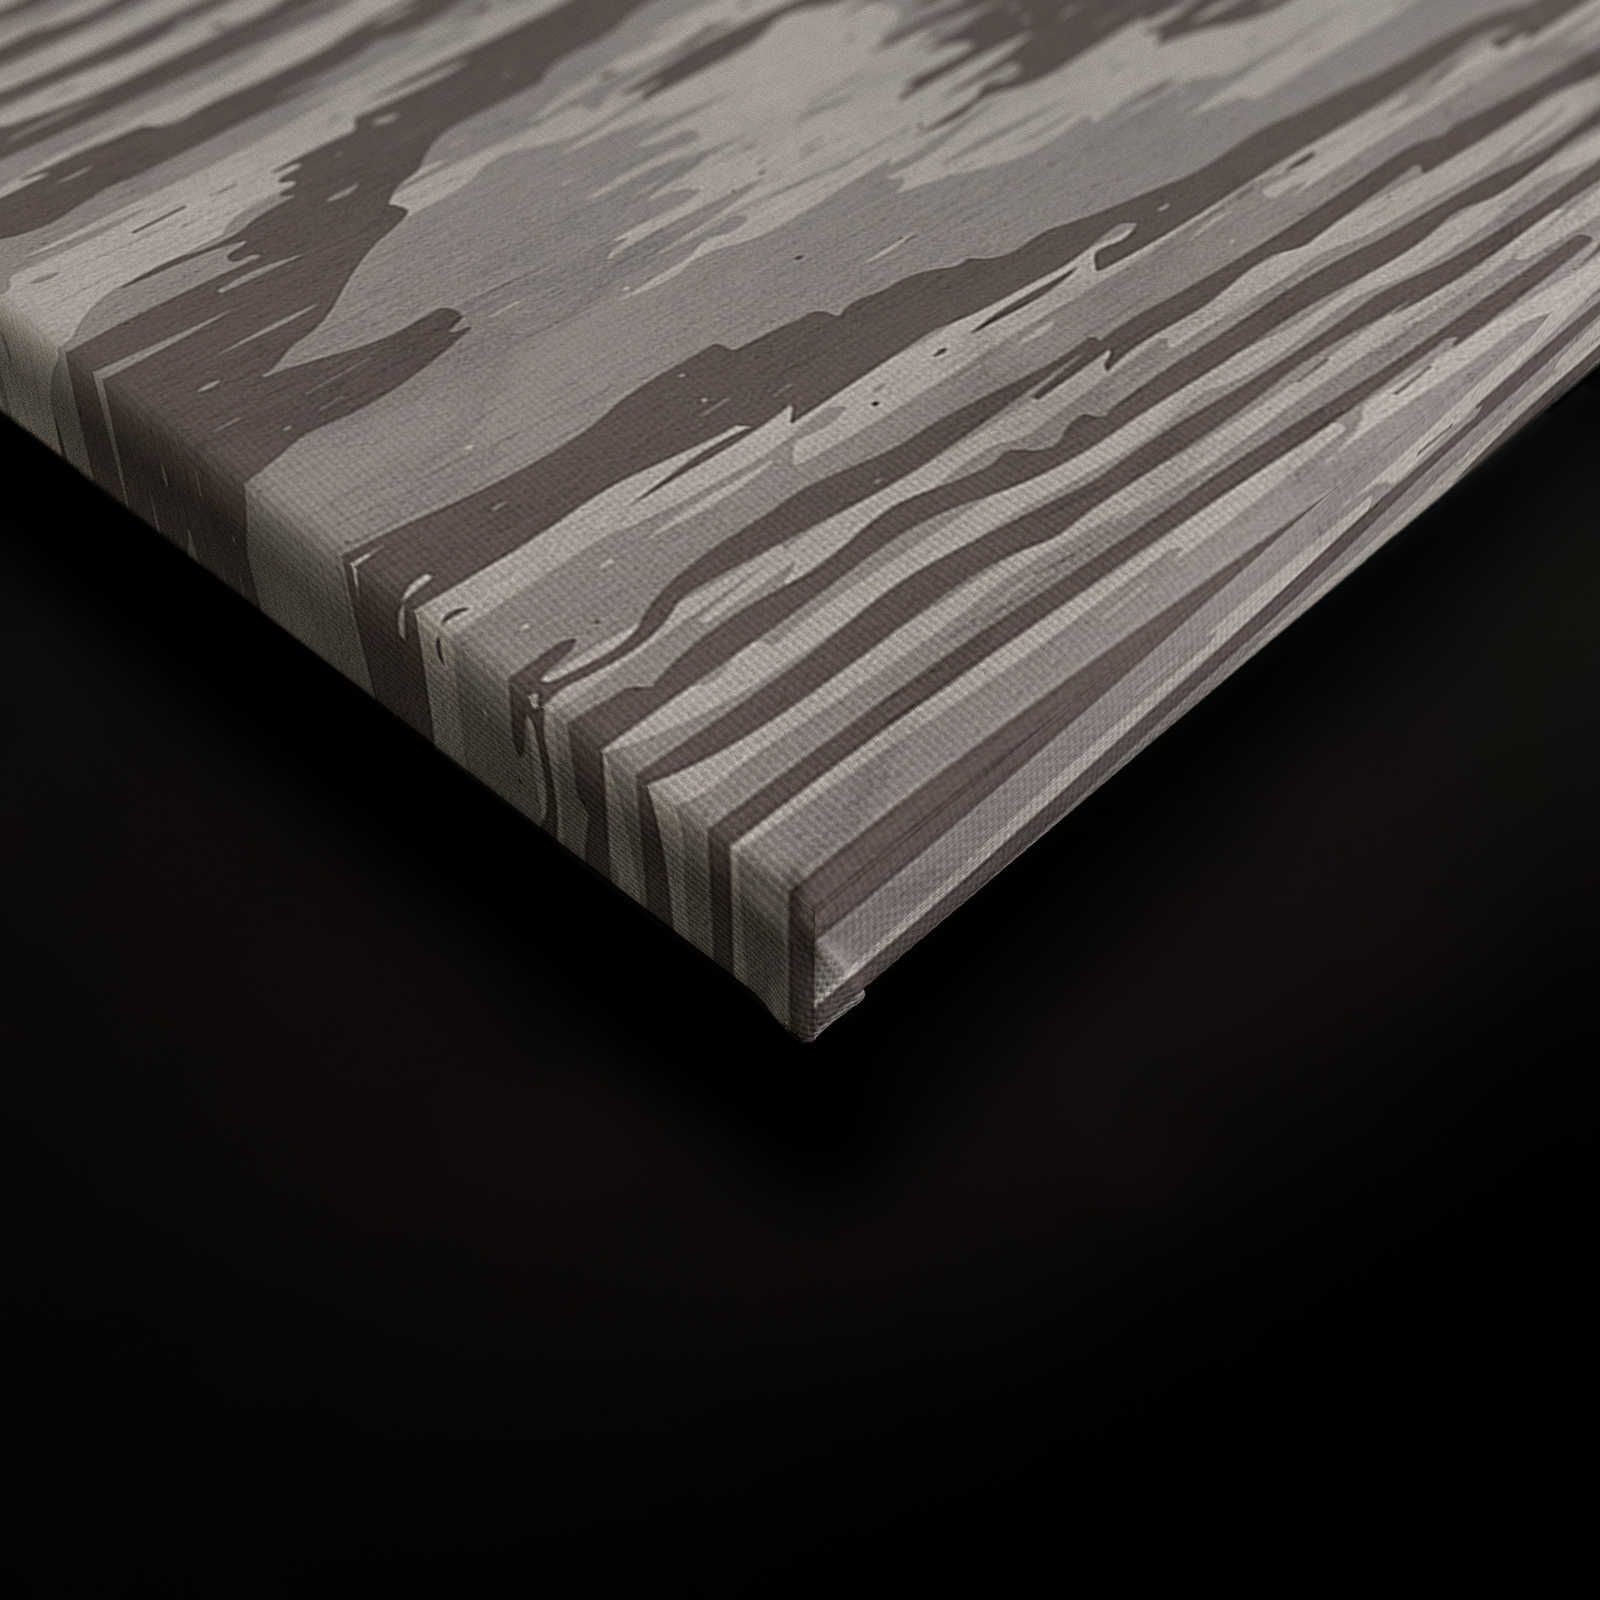             Bounty 4 - Pittura su tela effetto legno Grain XXL in marrone e grigio - 0,90 m x 0,60 m
        